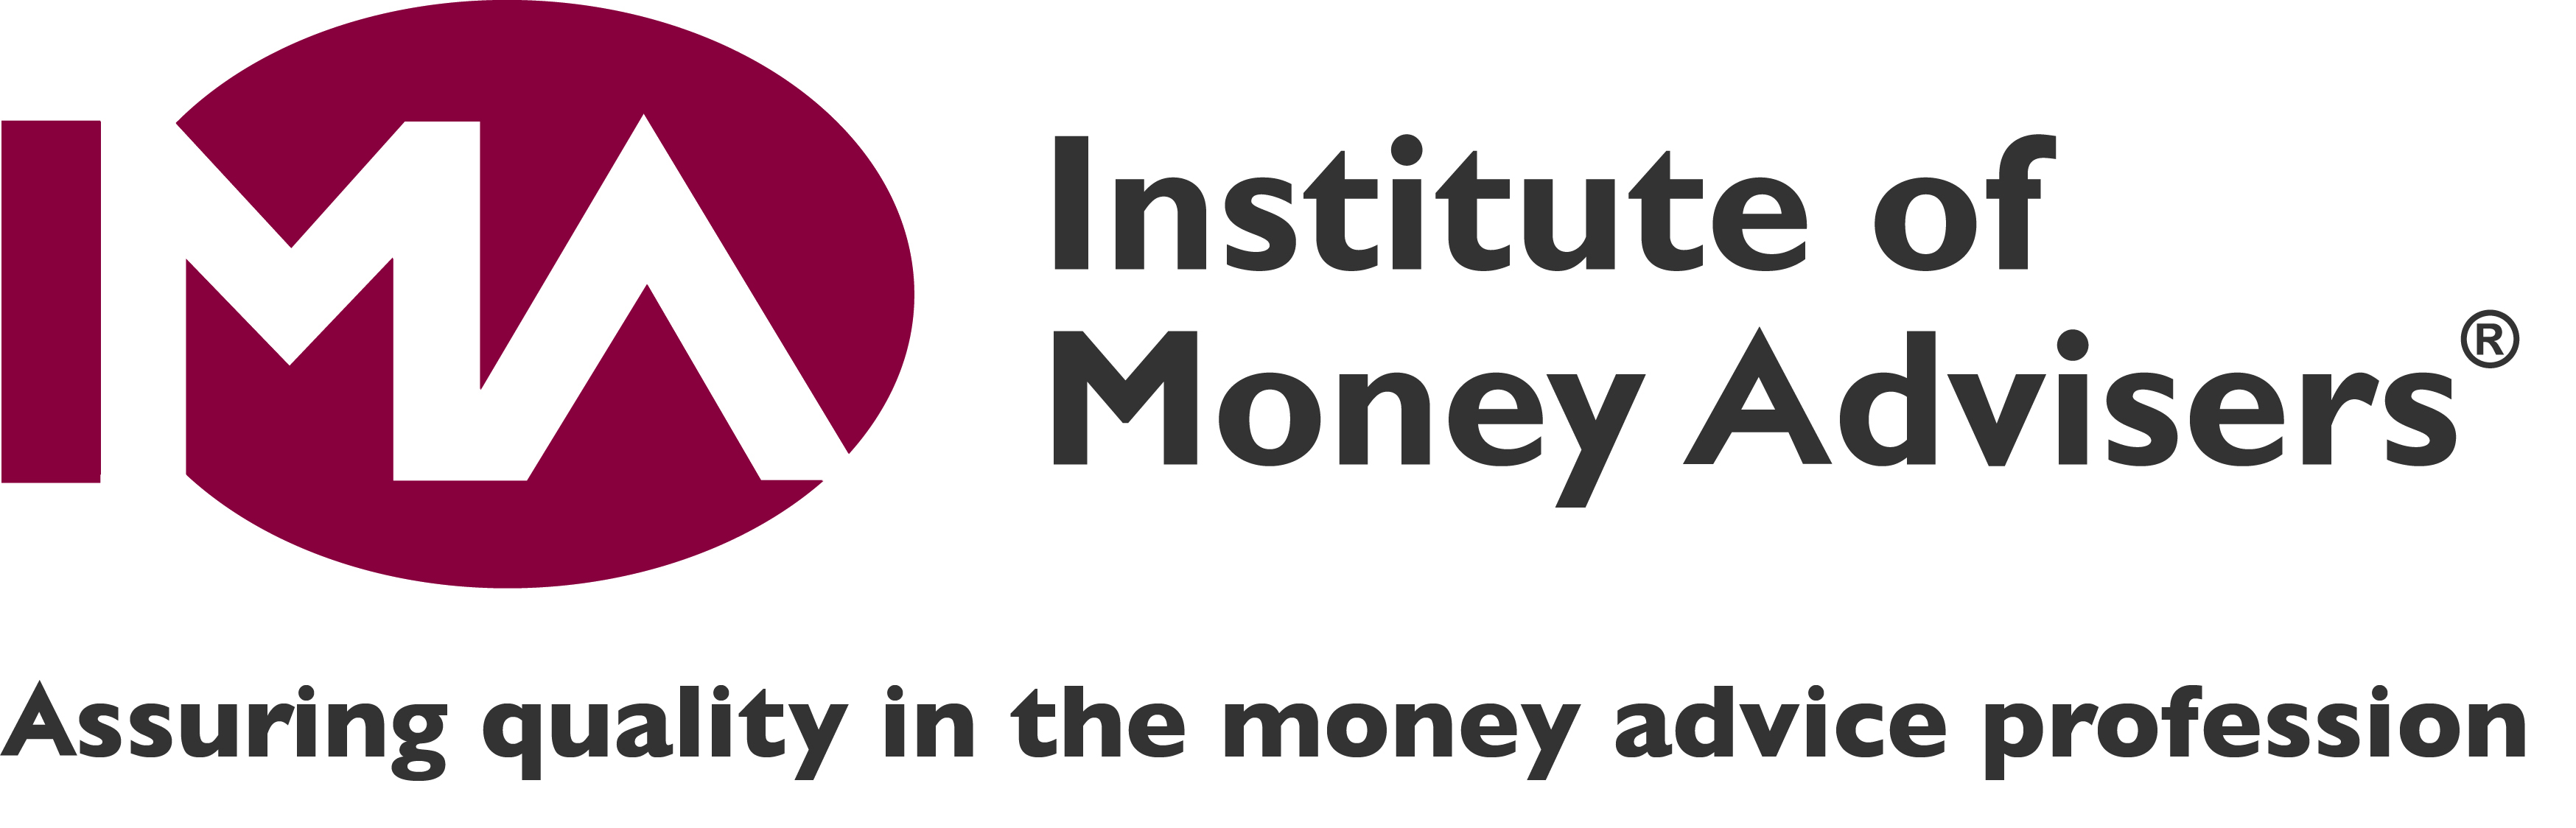 Institute of Money Advisers logo